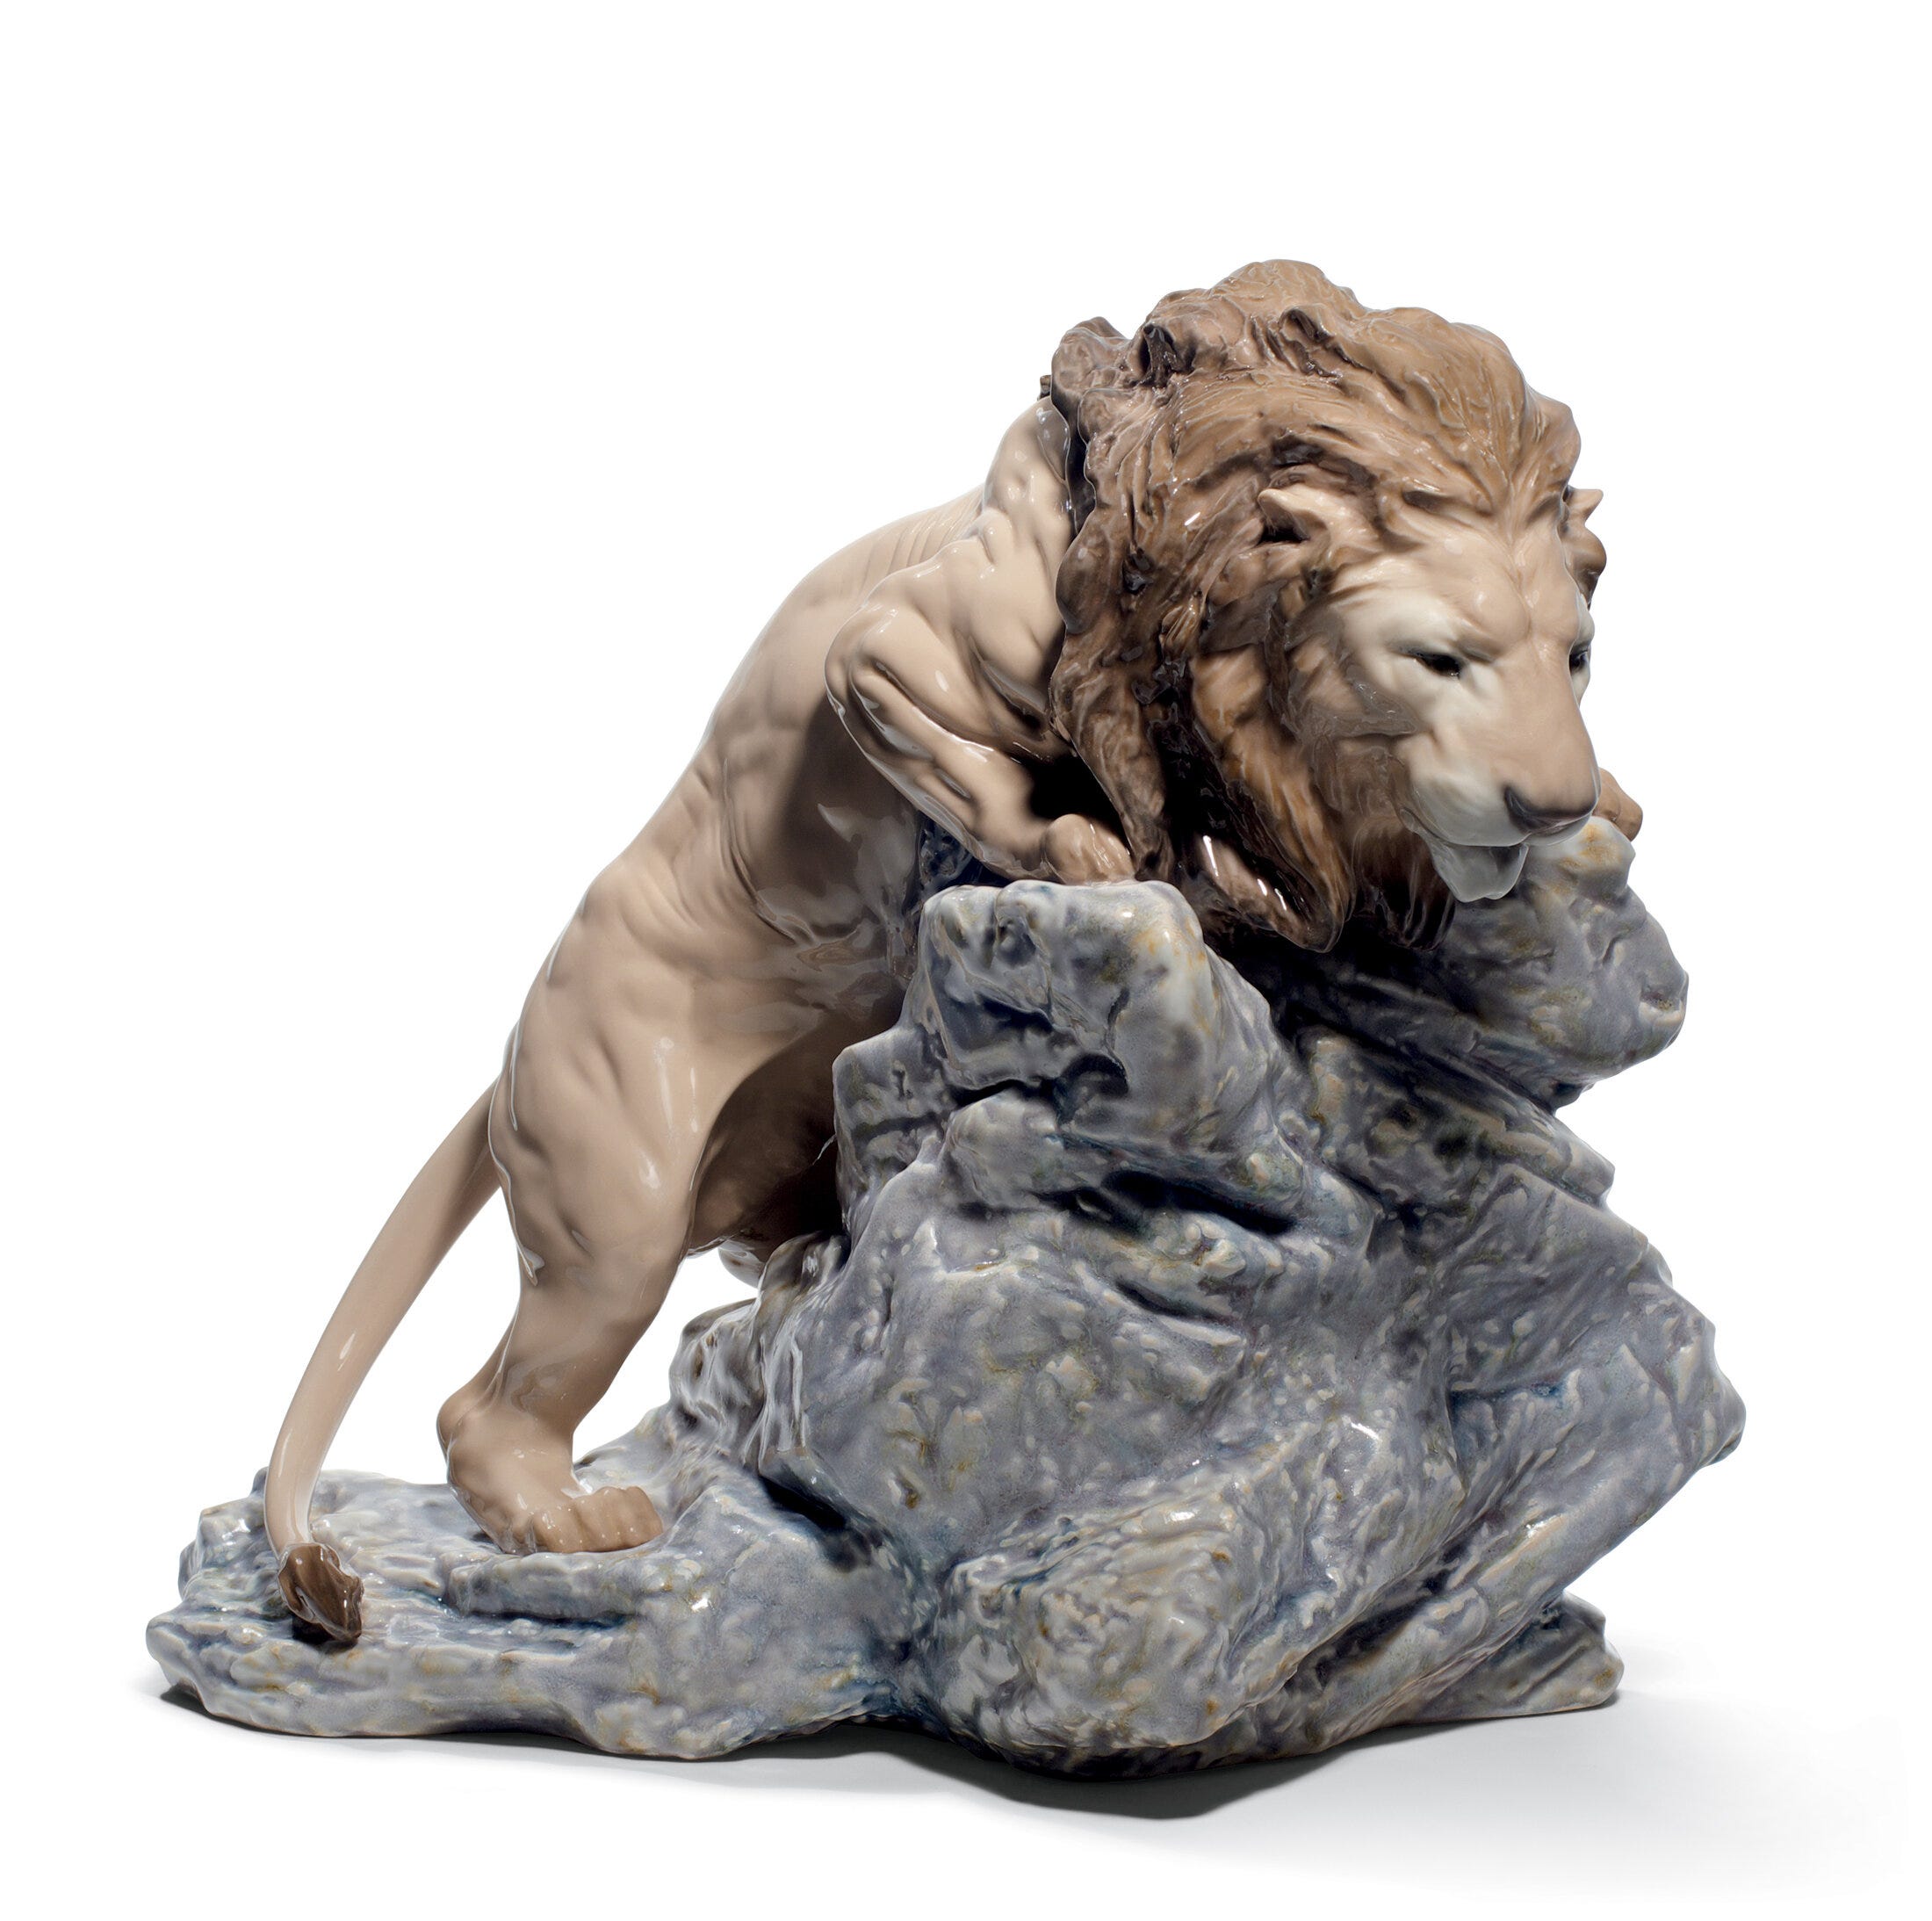 Figurina di leone che salta